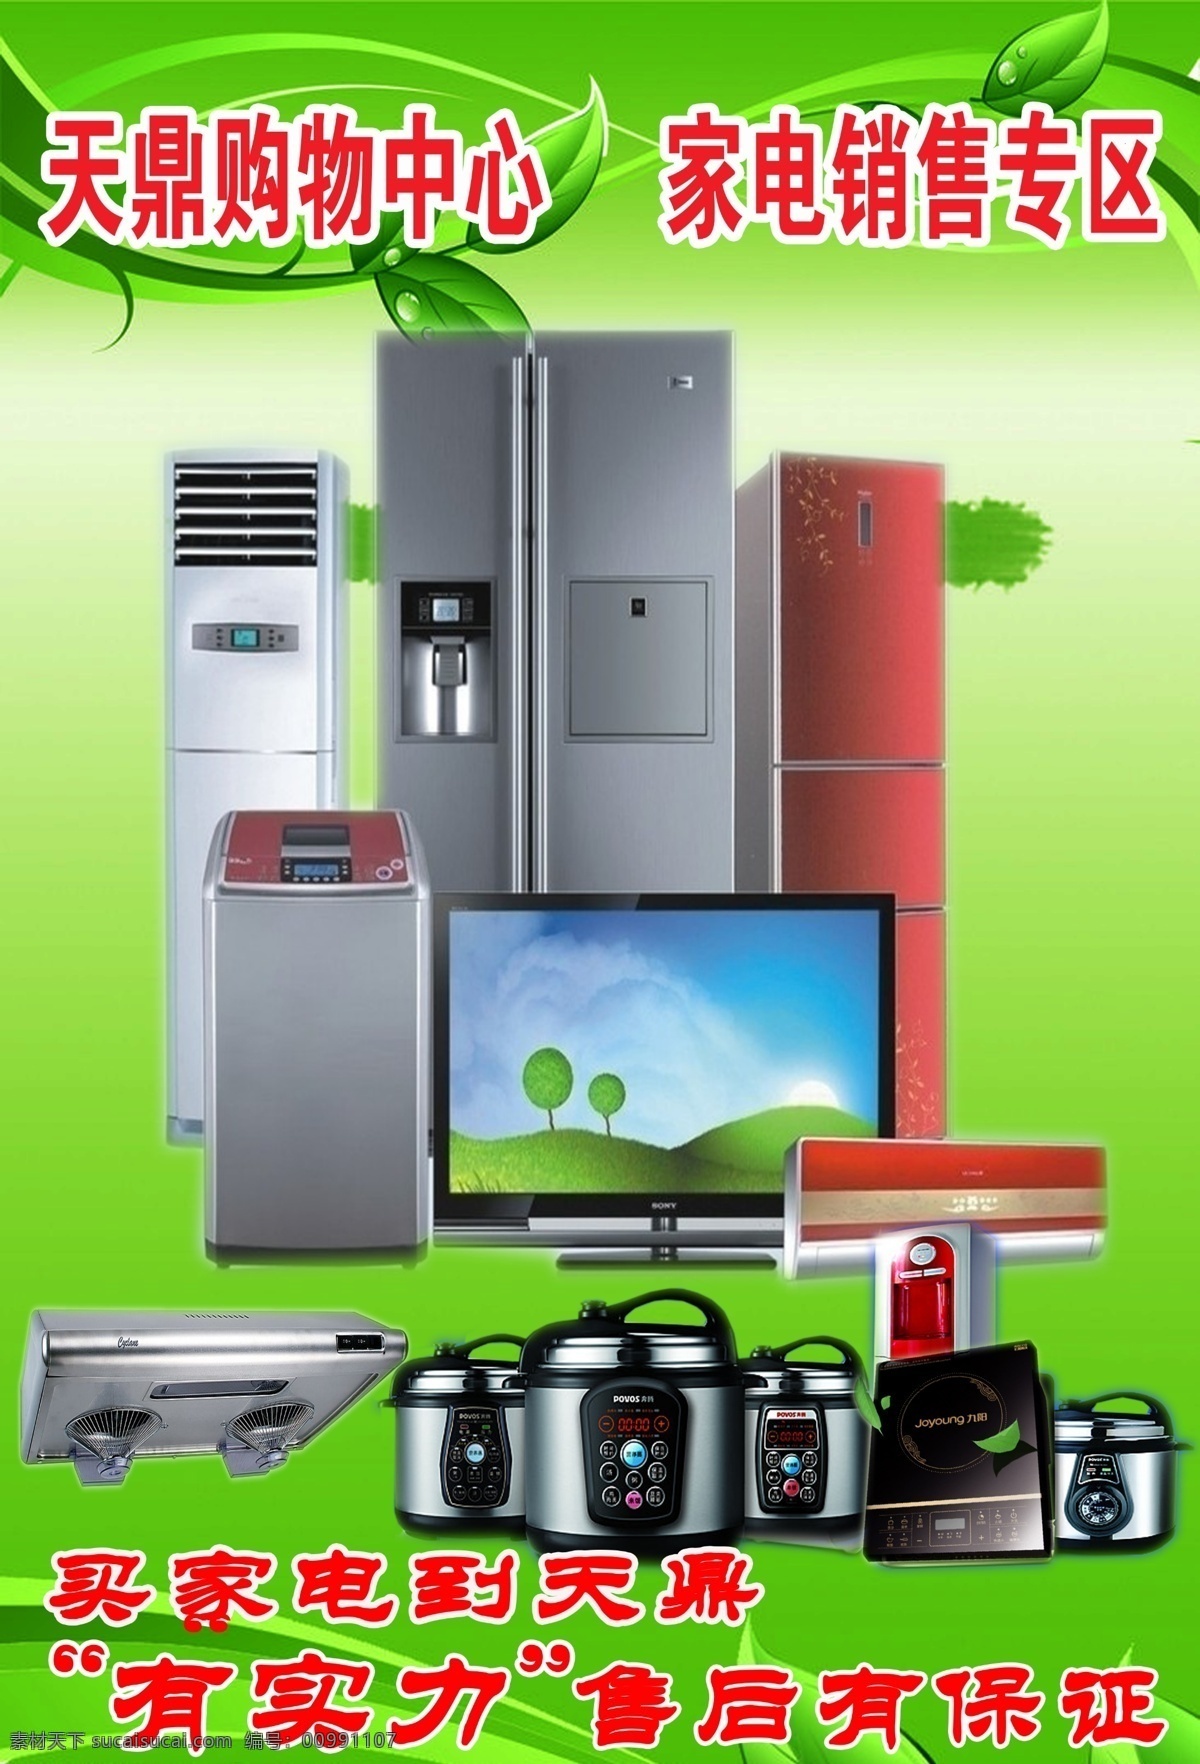 家电广告 空调 电冰箱 电视机 抽油烟机 电饭锅 电磁炉 绿色背景 广告 分层 源文件